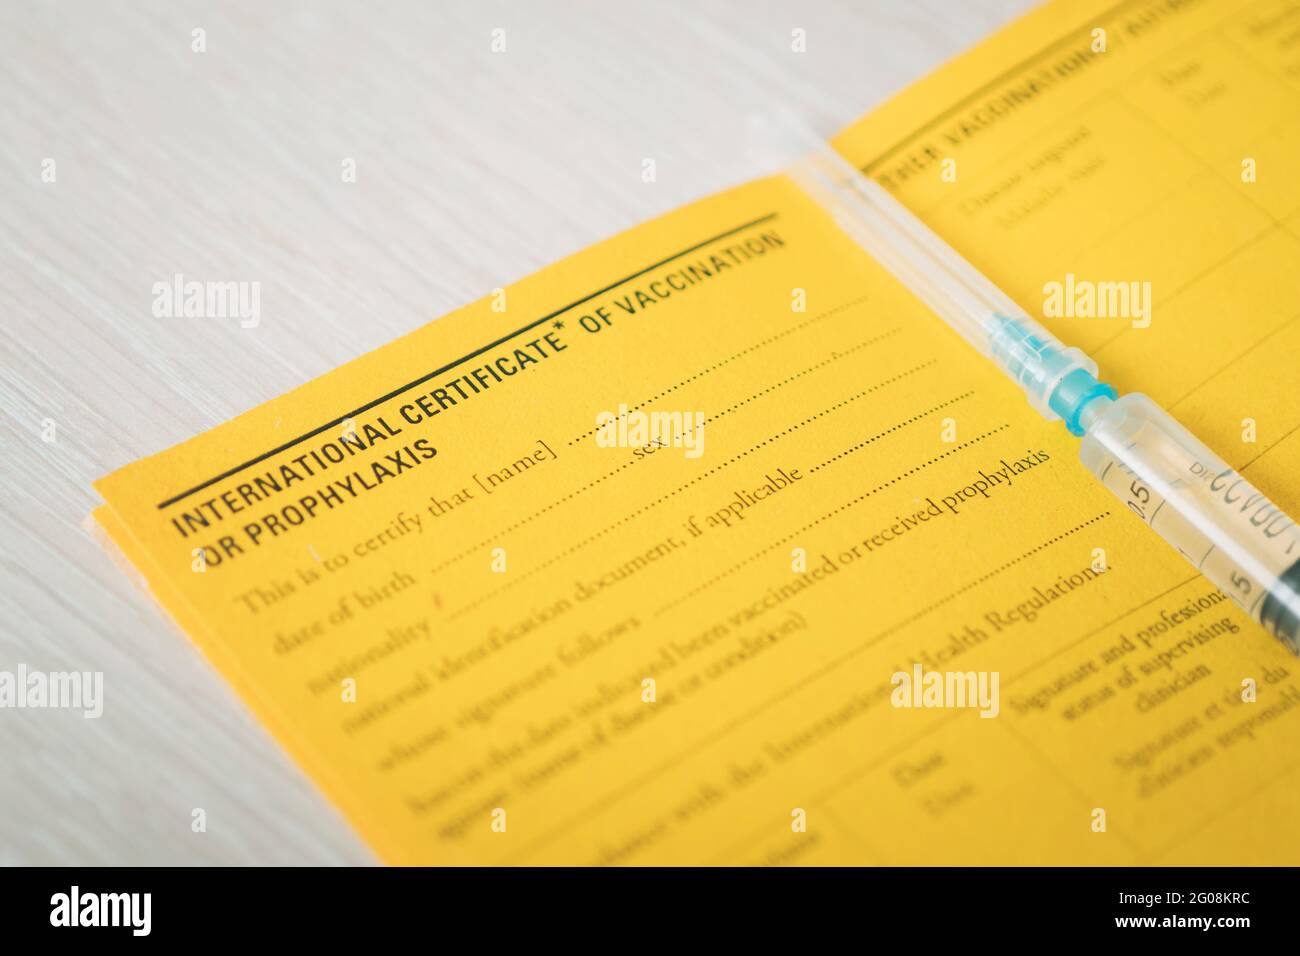 Internationale Bescheinigung über die Impfung ein Dokument für die Aufzeichnung der Impfstoffe gemacht. Das Dokument ist eine gelbe Farbe. Pass eines ausländischen Staatsbürgers und Stockfoto